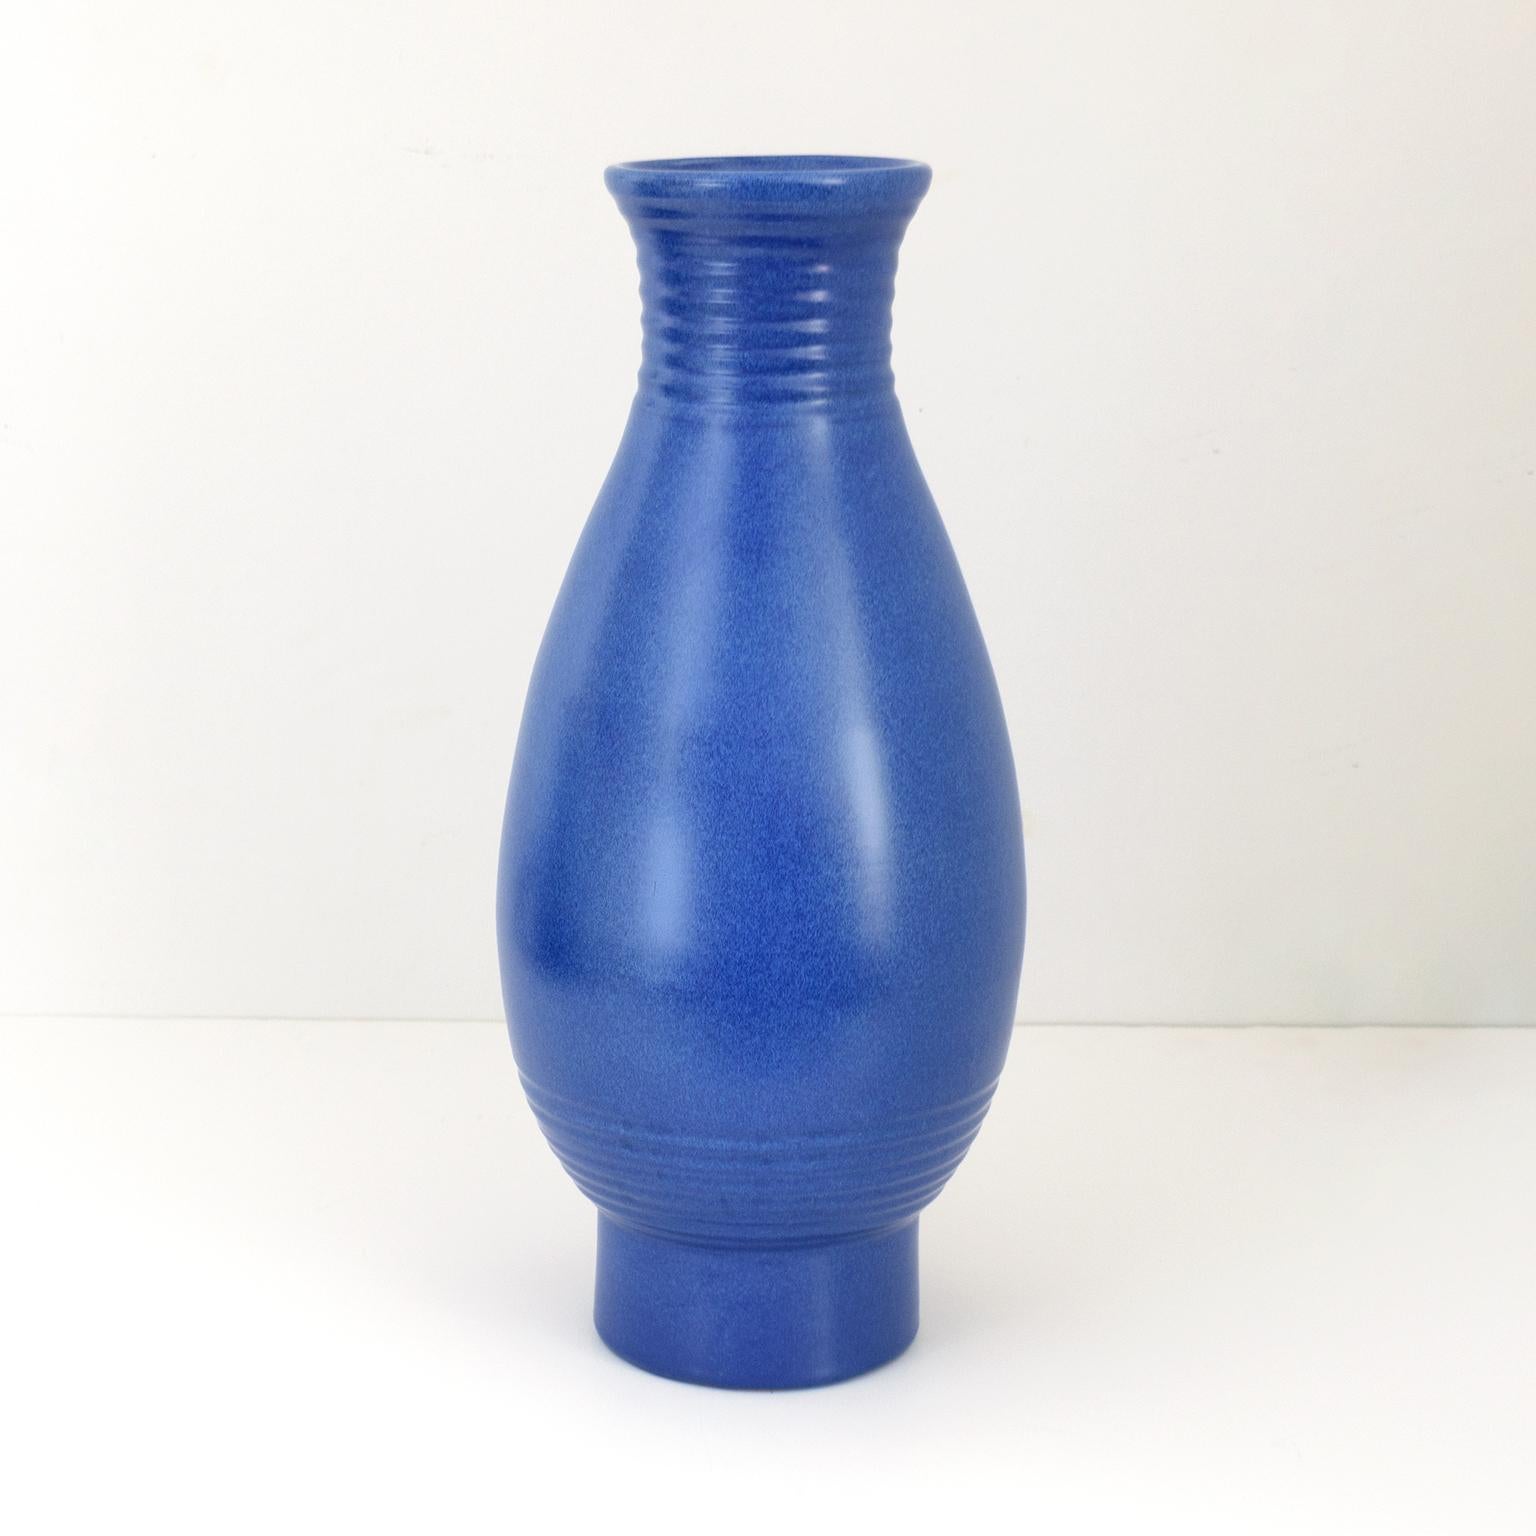 Vase Art déco suédois de l'artiste Ewald Dahlskog en glaçure bleue saturée, produit à Bo Fajans.
Dimensions : 19